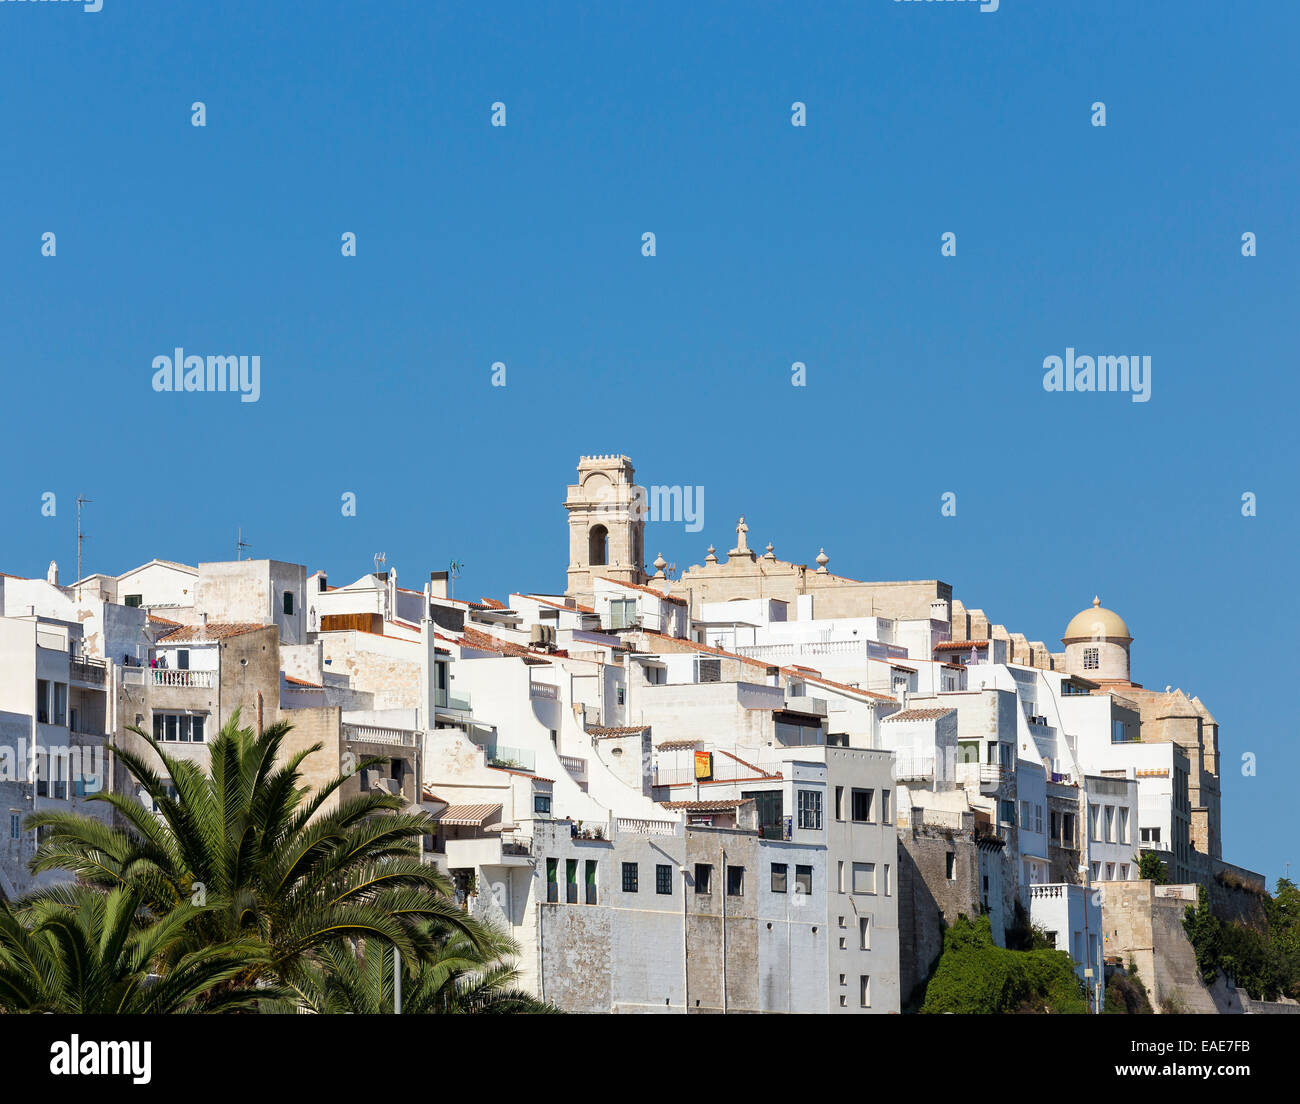 Historic centre of Maó, Mahon, Menorca, Balearic Islands, Spain Stock Photo